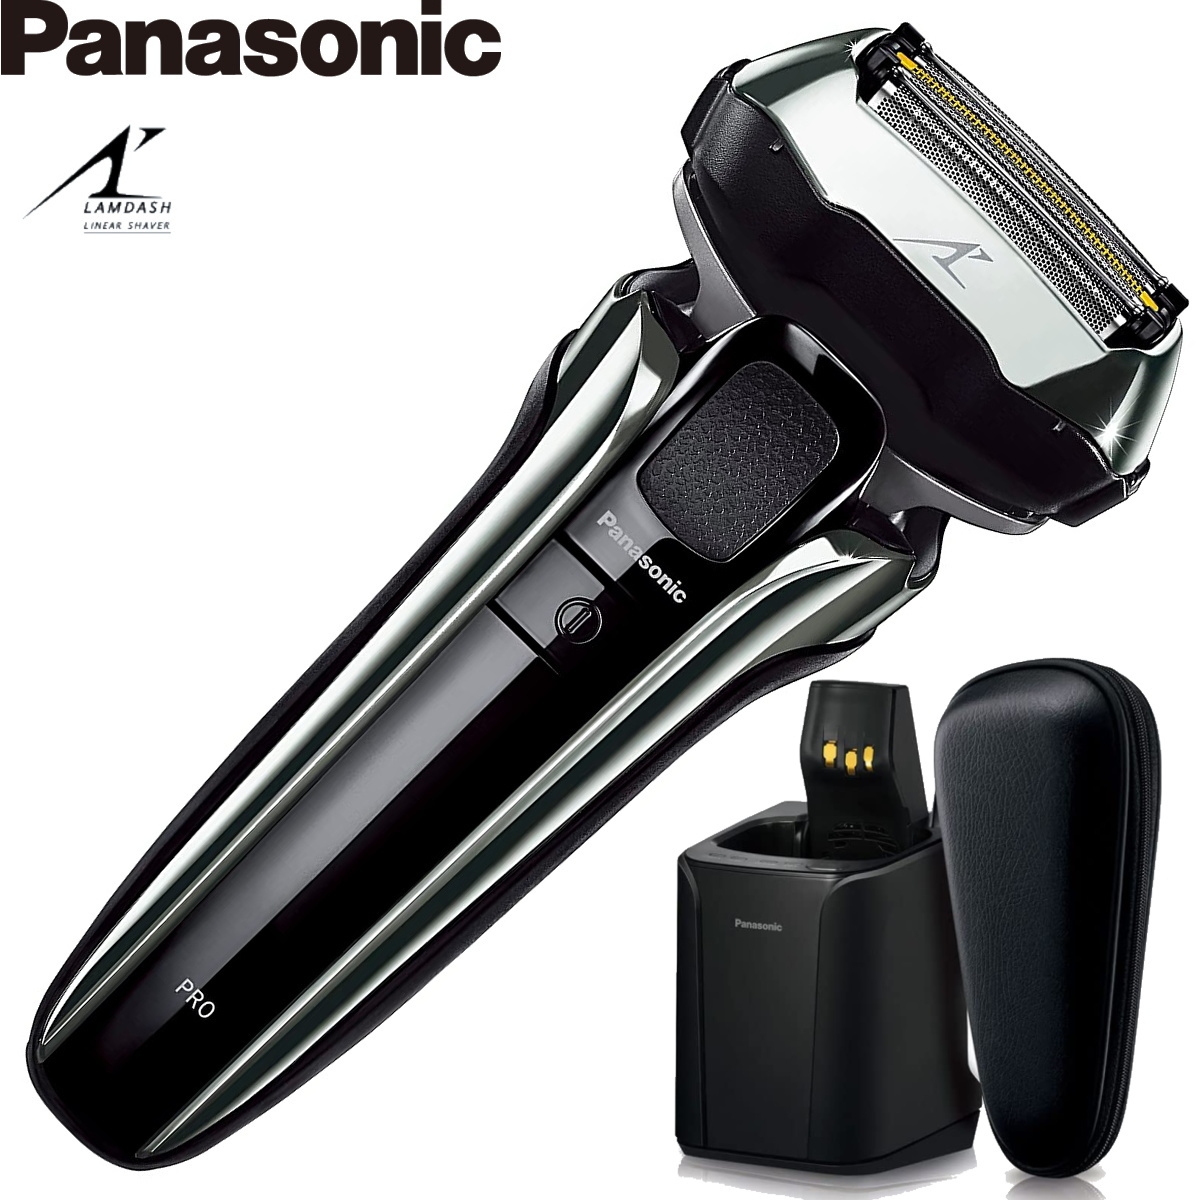 パナソニック ラムダッシュPRO メンズシェーバー 5枚刃 ES-LV9W-S シルバー 全自動洗浄充電器付 お風呂剃り